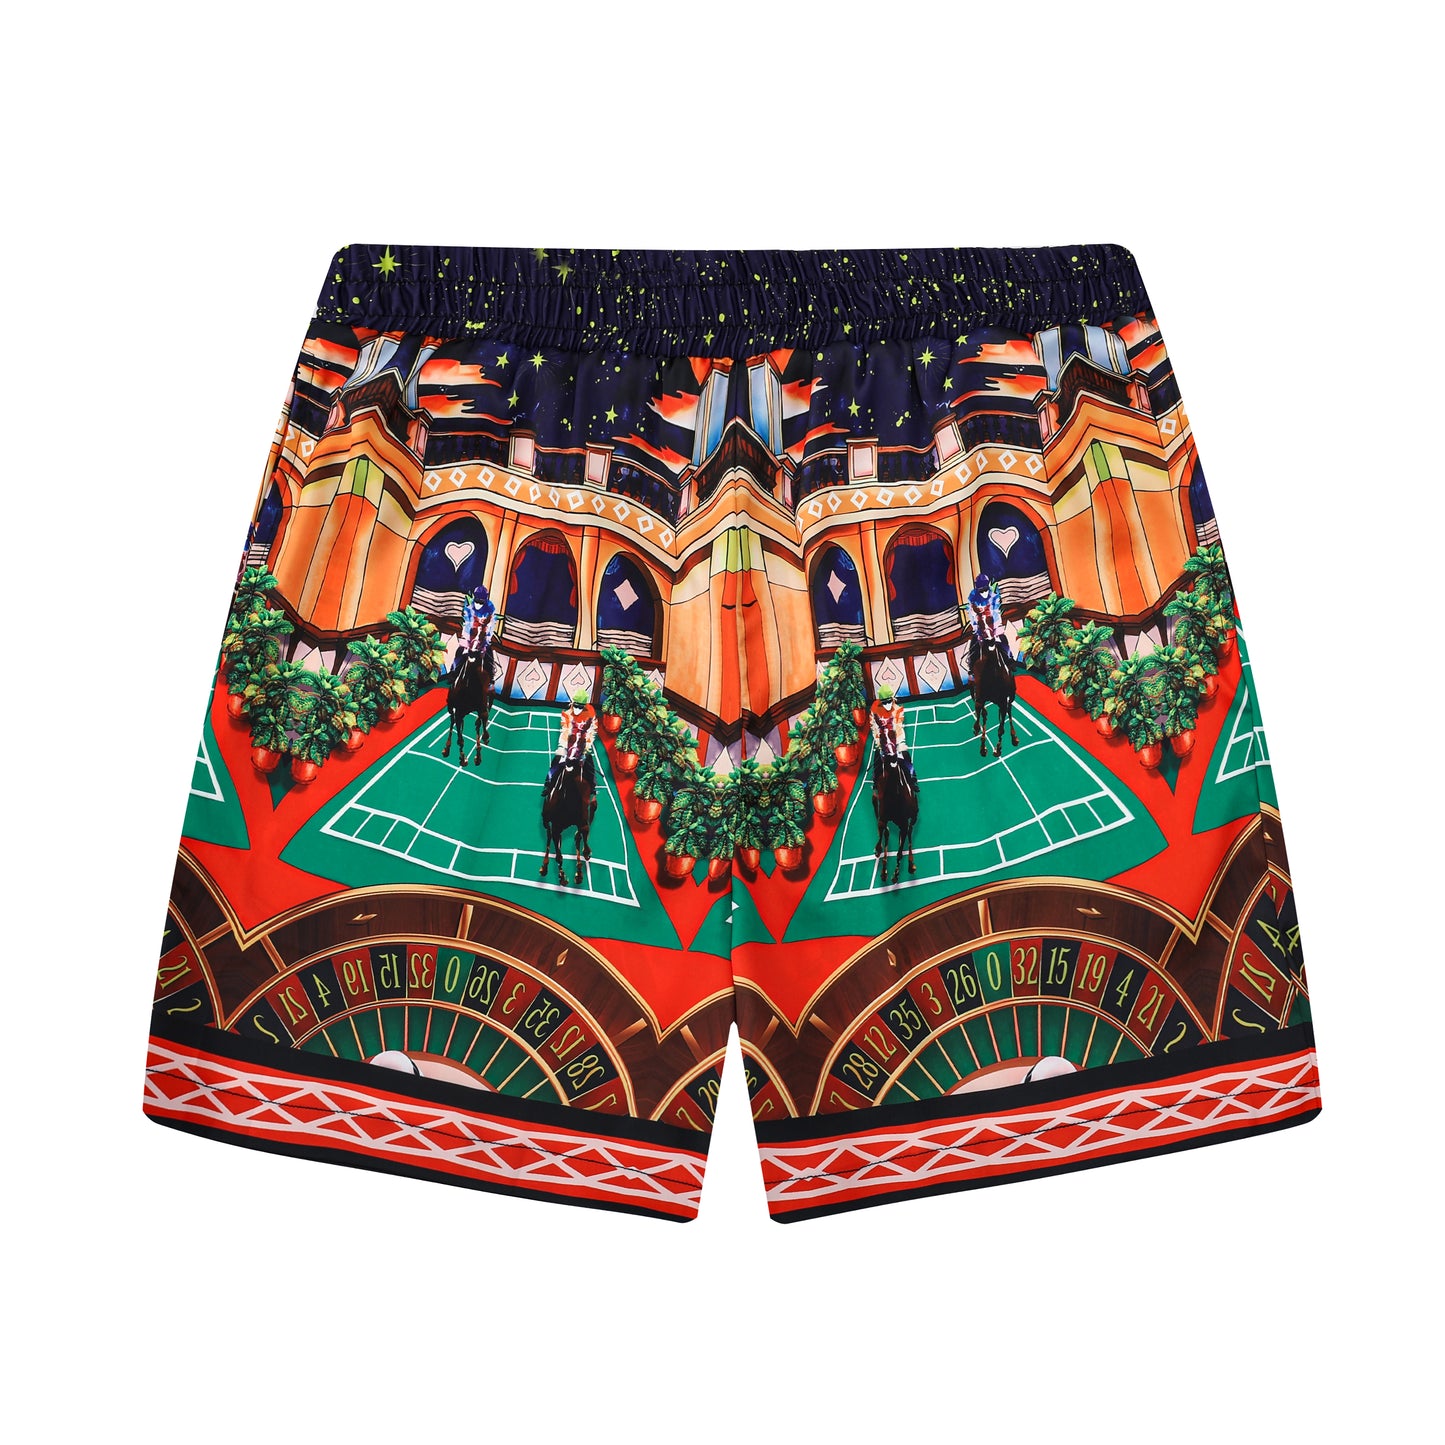 Starry Night Casino Printed Waistband Shorts